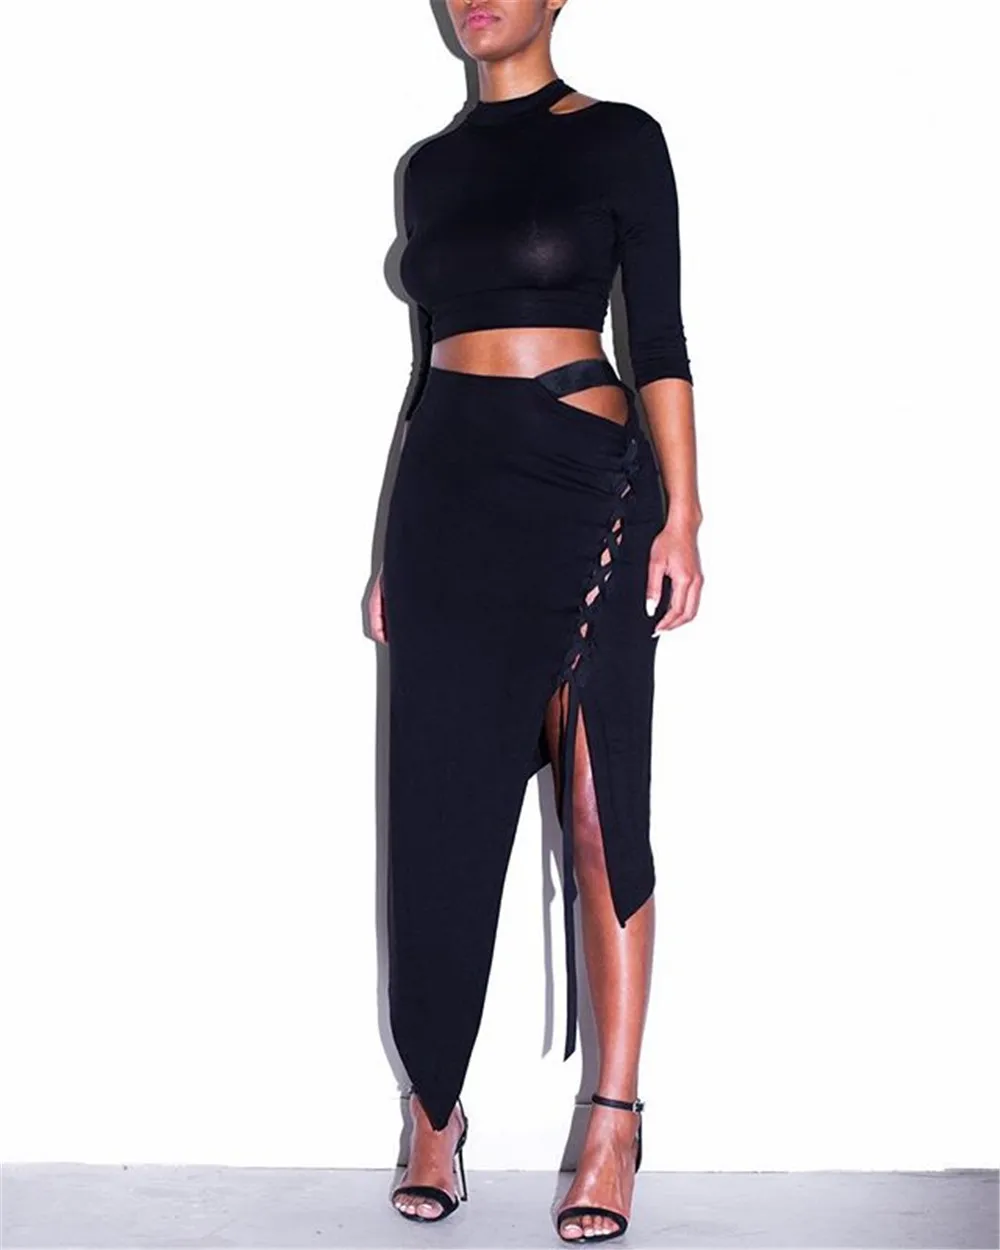 KGFIGU женские комплекты, модный короткий топ с длинным рукавом, мини-юбка, сексуальный клубный неоновый черный комбинезон, комплекты из двух предметов, вечерние наряды